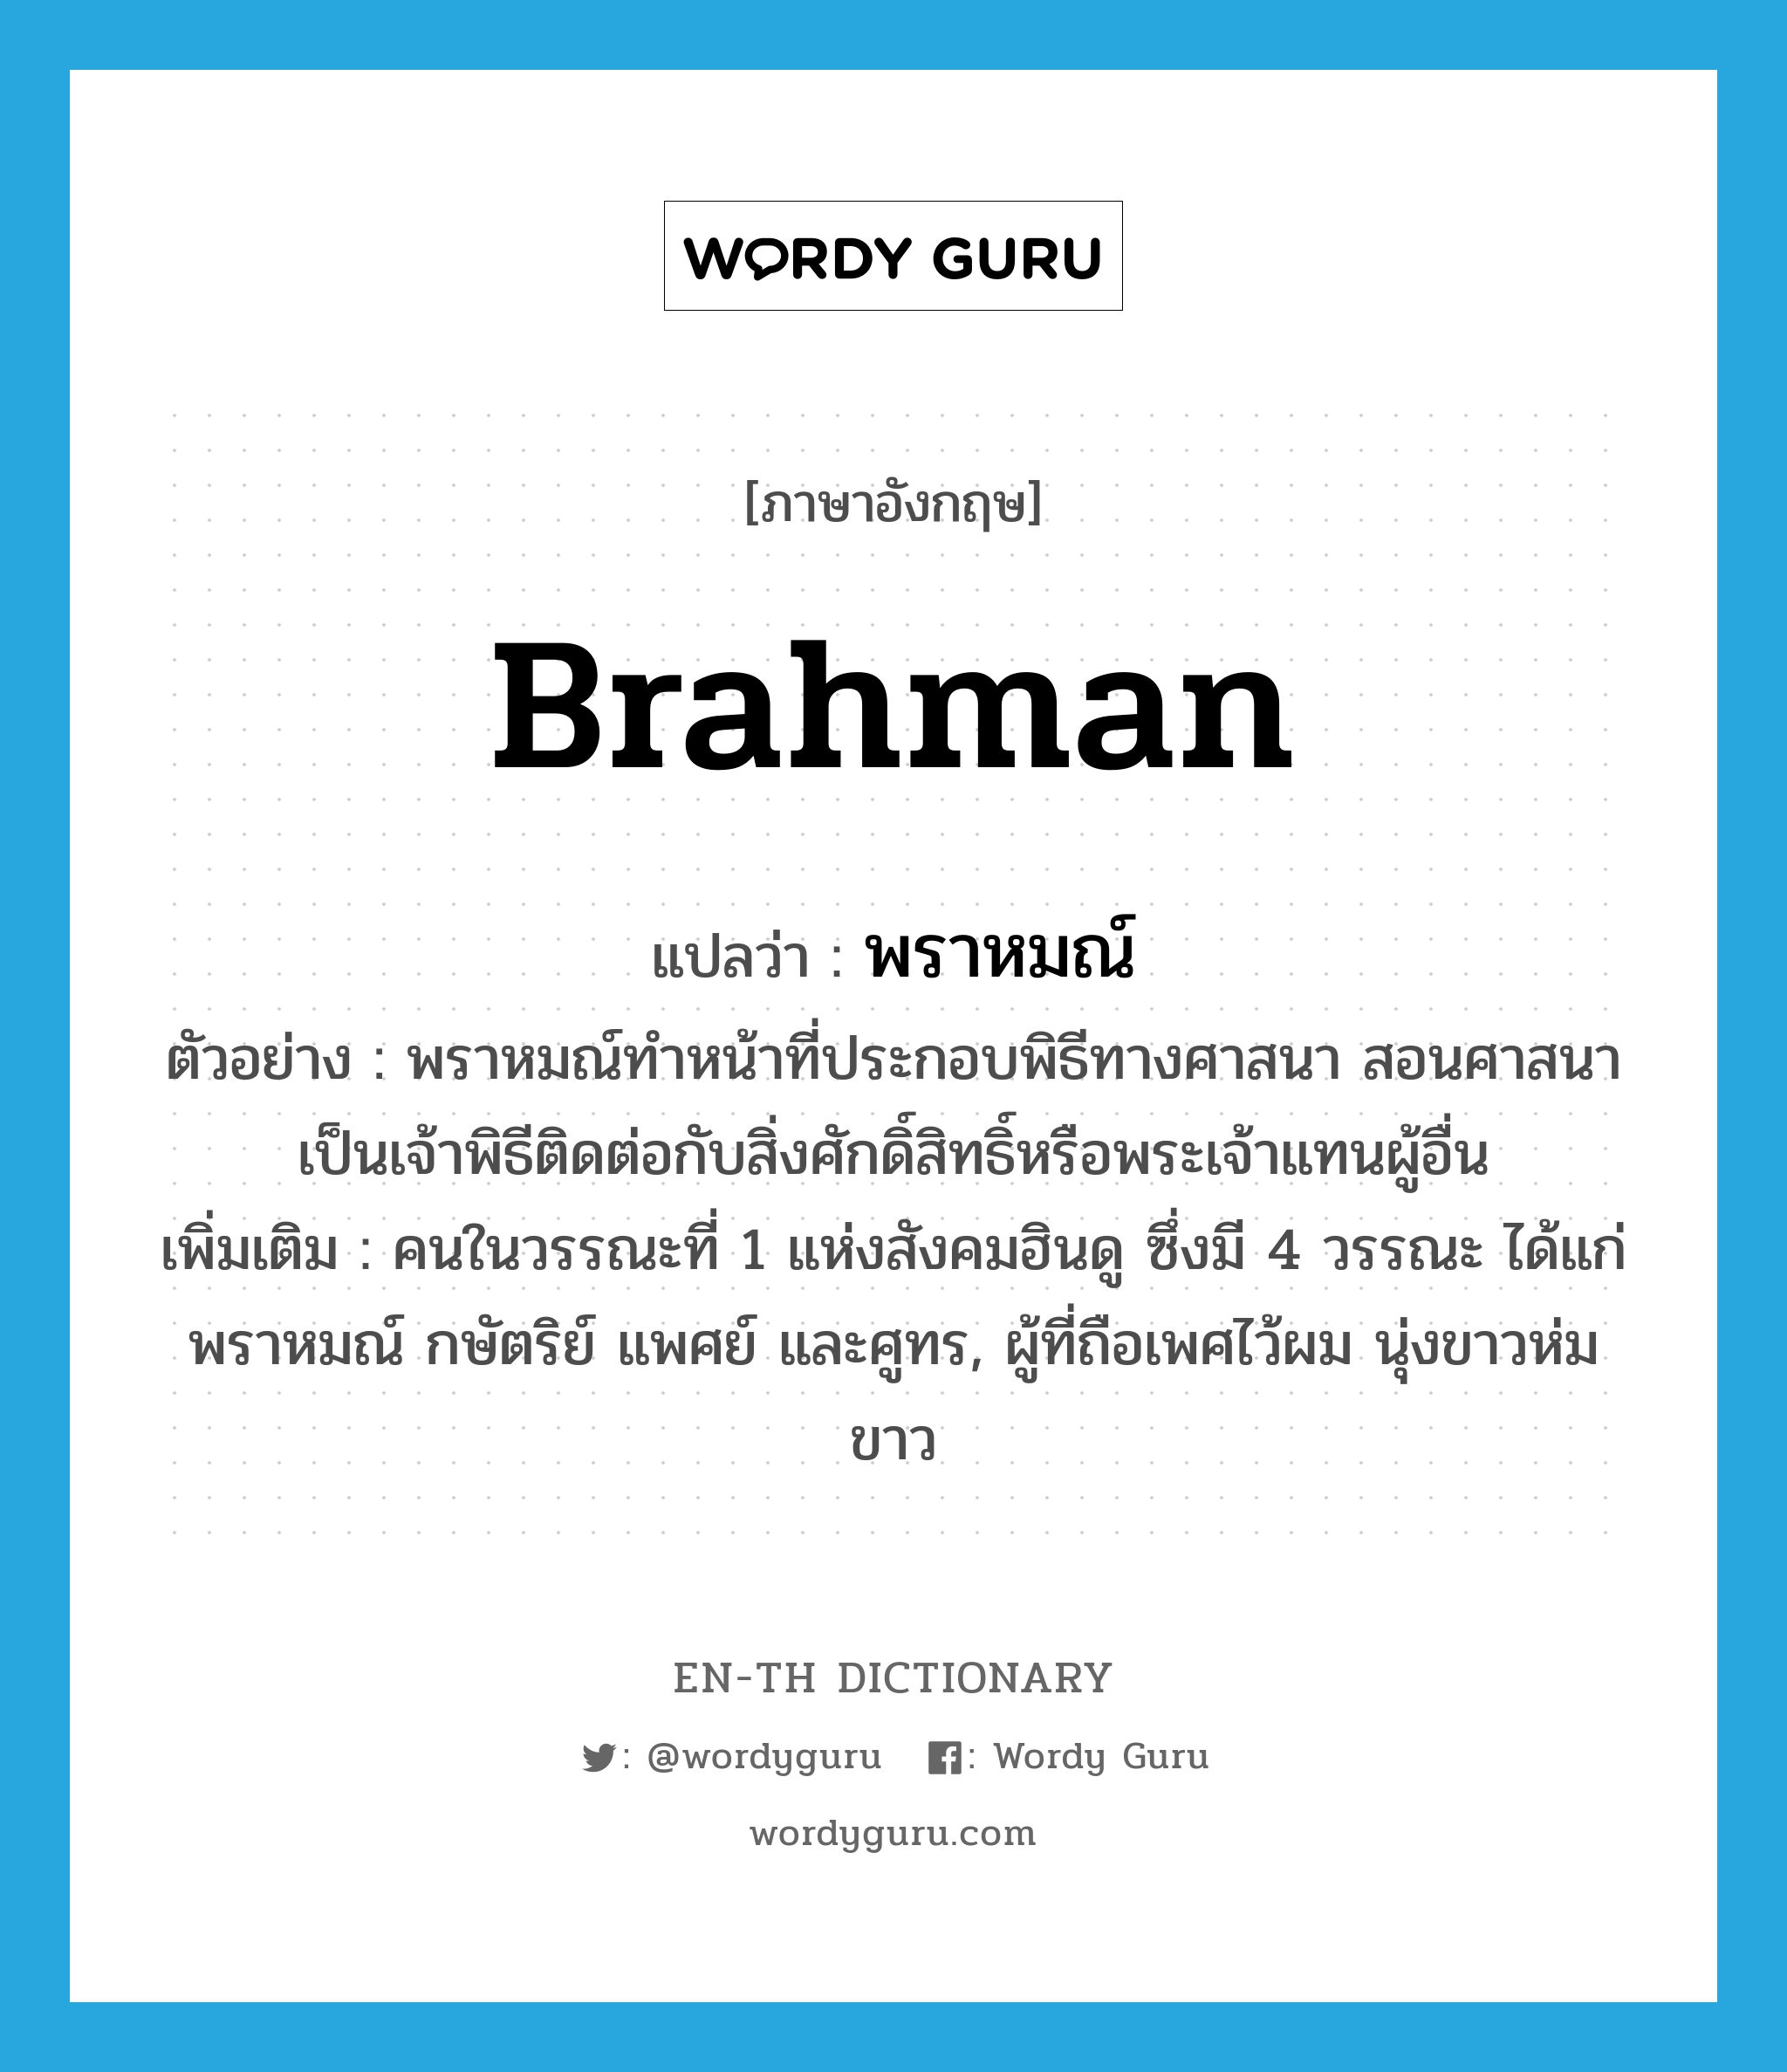 Brahman แปลว่า?, คำศัพท์ภาษาอังกฤษ Brahman แปลว่า พราหมณ์ ประเภท N ตัวอย่าง พราหมณ์ทำหน้าที่ประกอบพิธีทางศาสนา สอนศาสนา เป็นเจ้าพิธีติดต่อกับสิ่งศักดิ์สิทธิ์หรือพระเจ้าแทนผู้อื่น เพิ่มเติม คนในวรรณะที่ 1 แห่งสังคมฮินดู ซึ่งมี 4 วรรณะ ได้แก่ พราหมณ์ กษัตริย์ แพศย์ และศูทร, ผู้ที่ถือเพศไว้ผม นุ่งขาวห่มขาว หมวด N